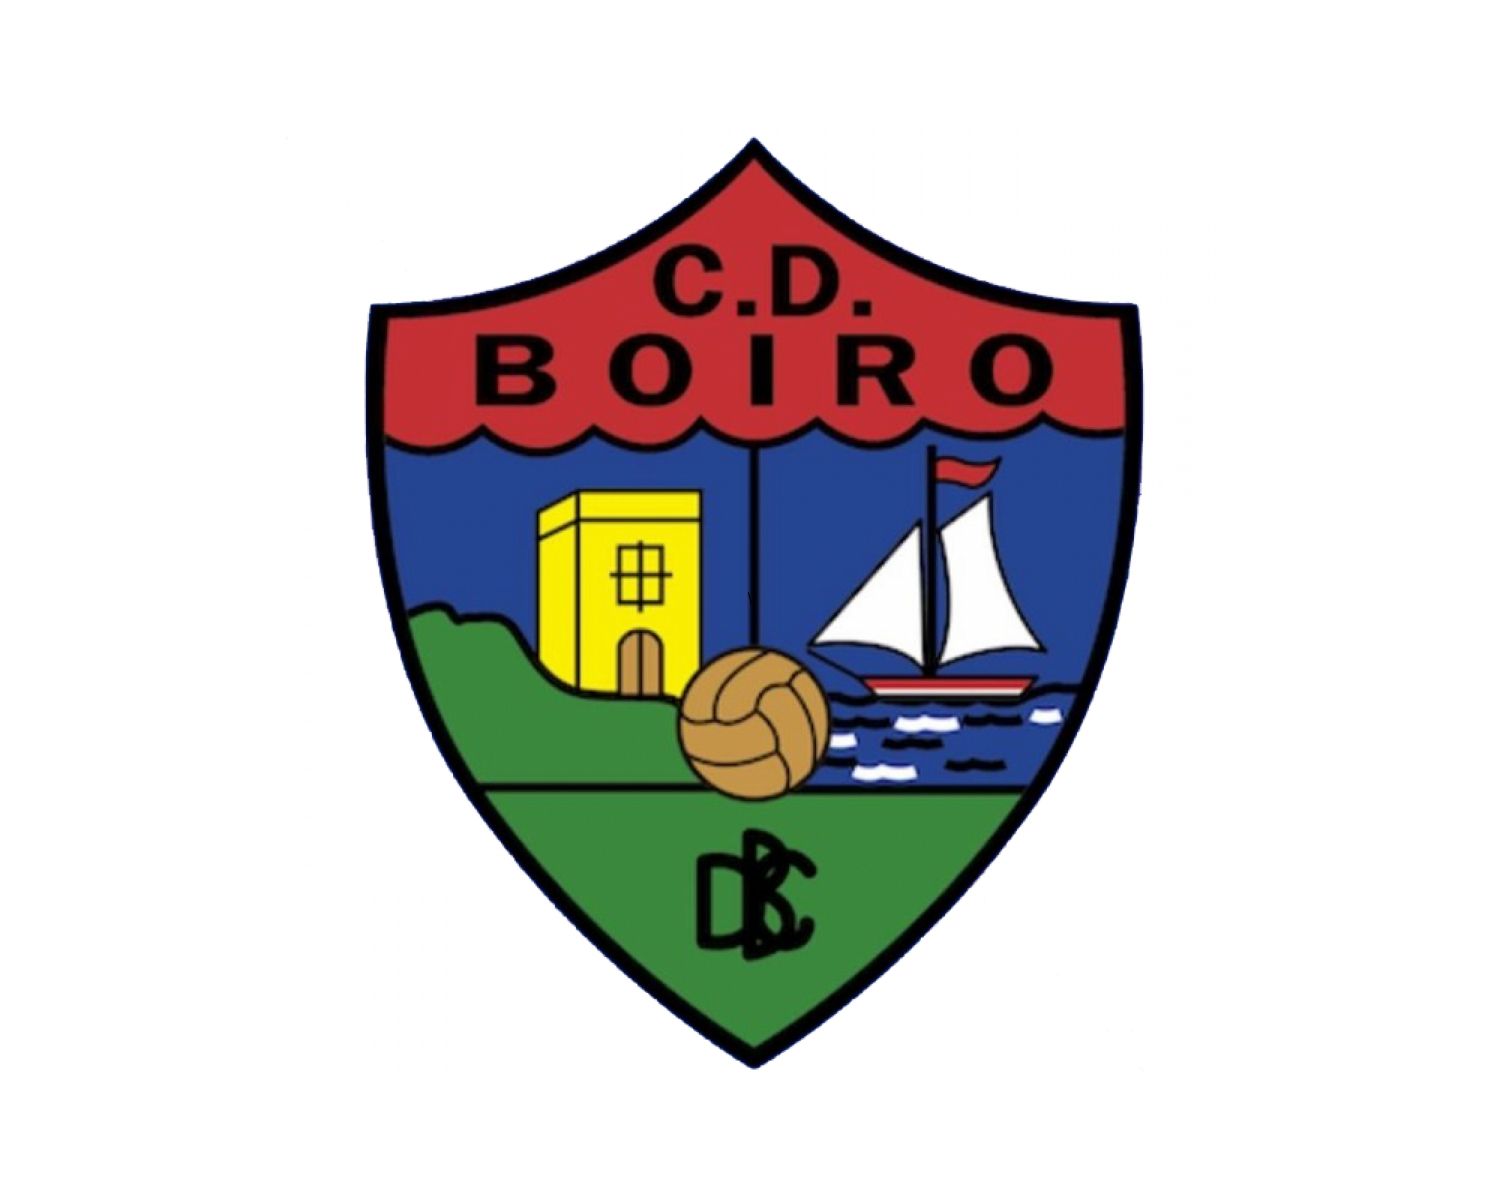 cd-boiro-17-football-club-facts